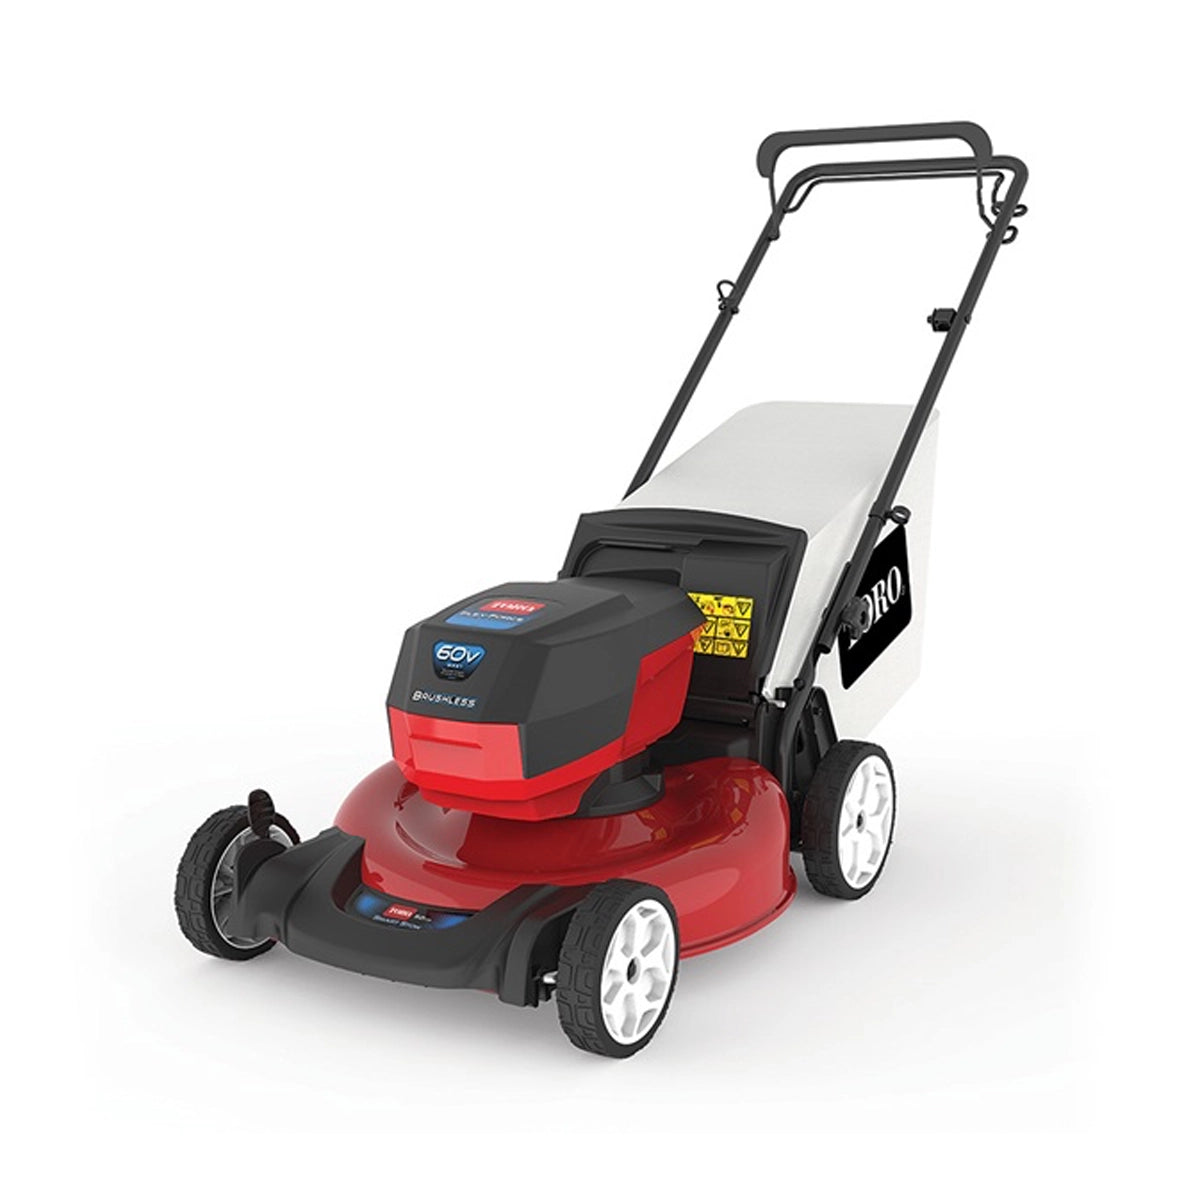 Toro 21852 52cm Recycler® 60V Cordless Lawn Mower Kit